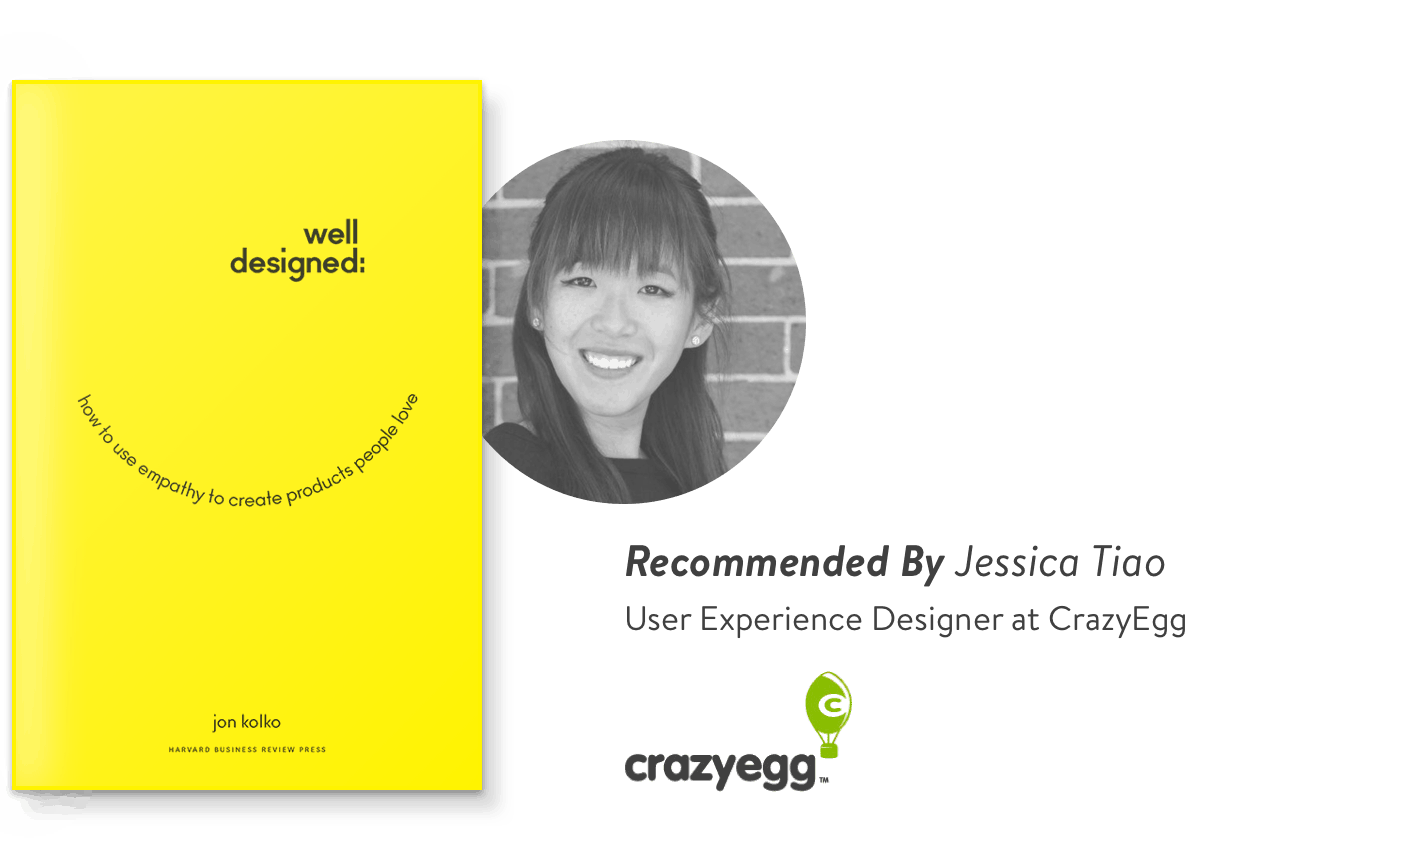 Jessica Tiao, Designer at CrazyEgg